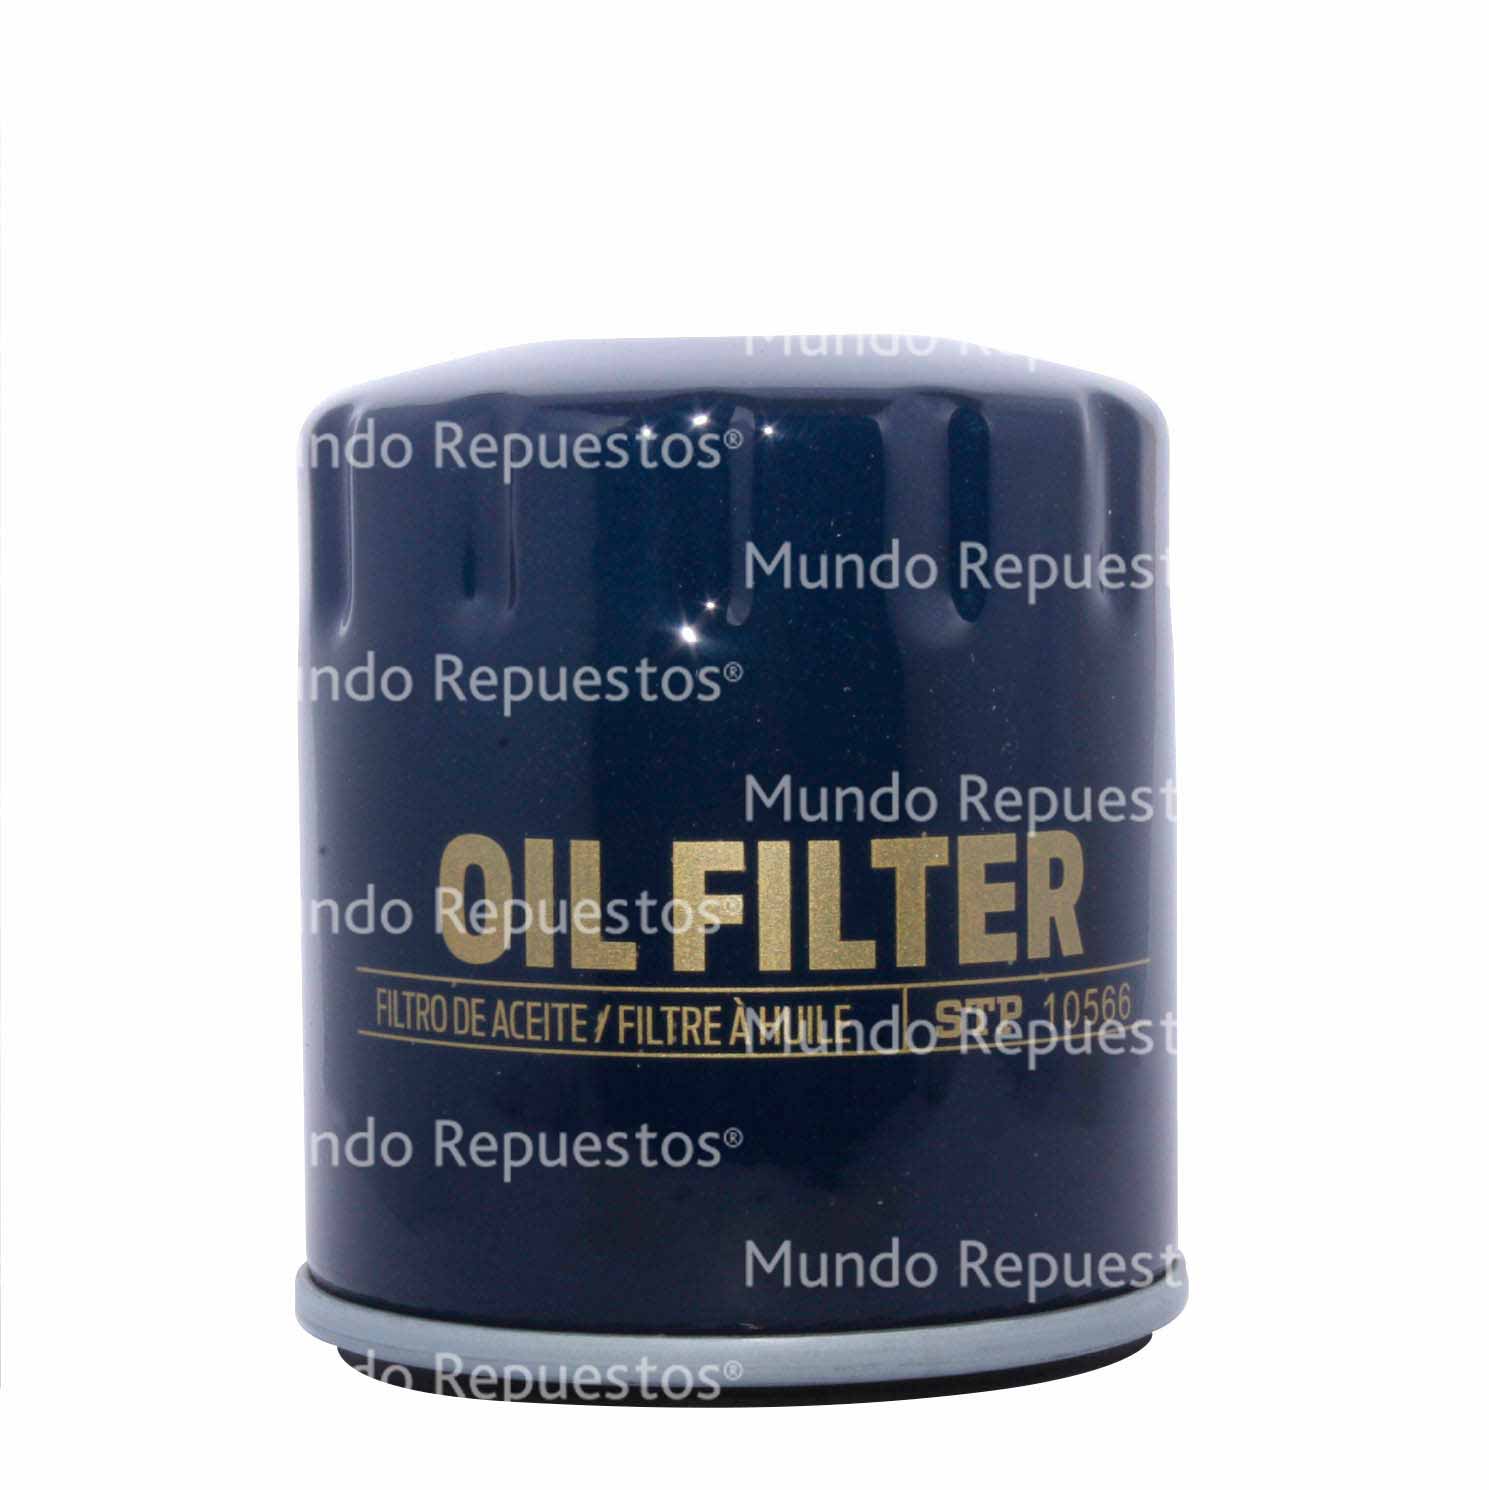 Filtro aceite marca Stp disponible en Mundo Repuestos